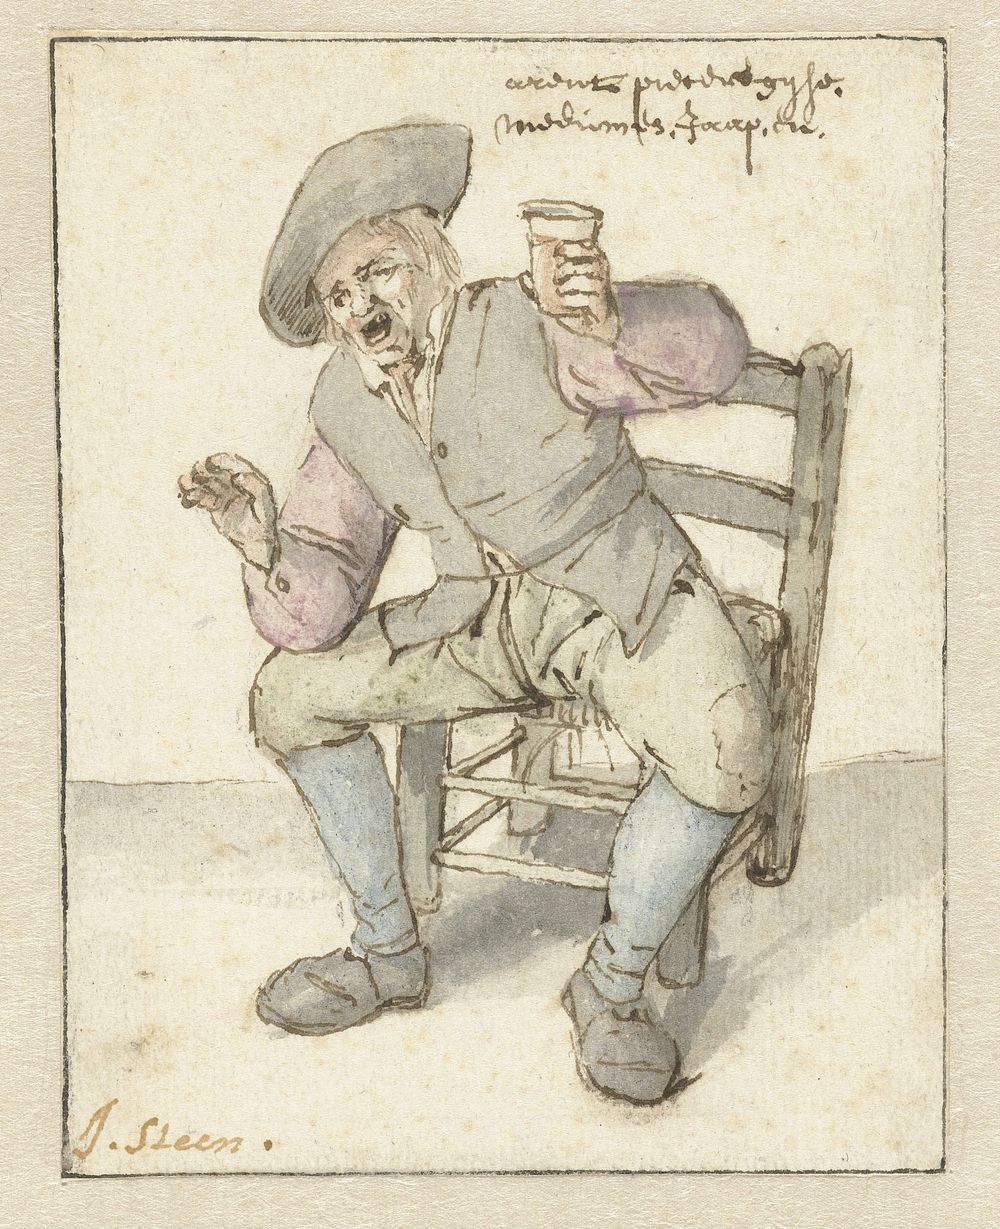 Zingende boer (1636 - 1679) by Jan Havicksz Steen